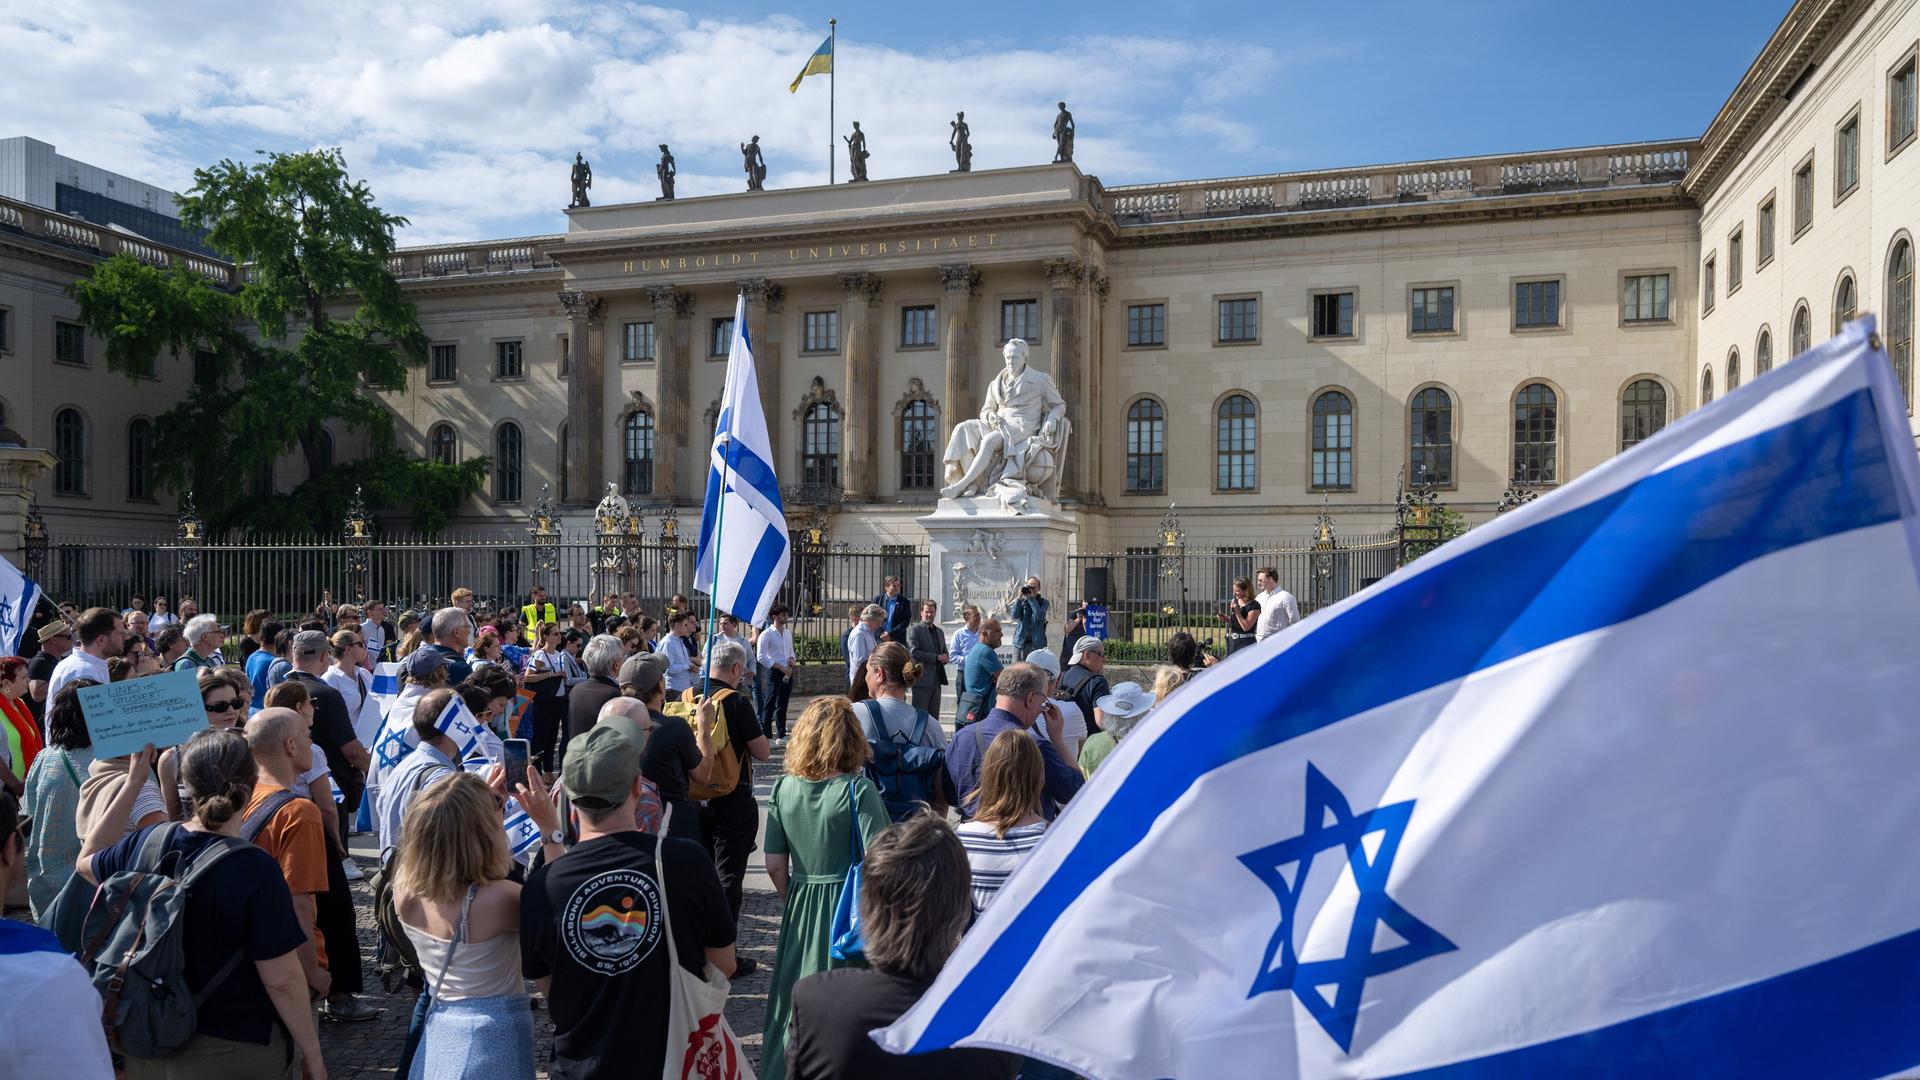 Teilnehmer stehen mit israelischen Fahnen bei einer Kundgebung vor der Universität.